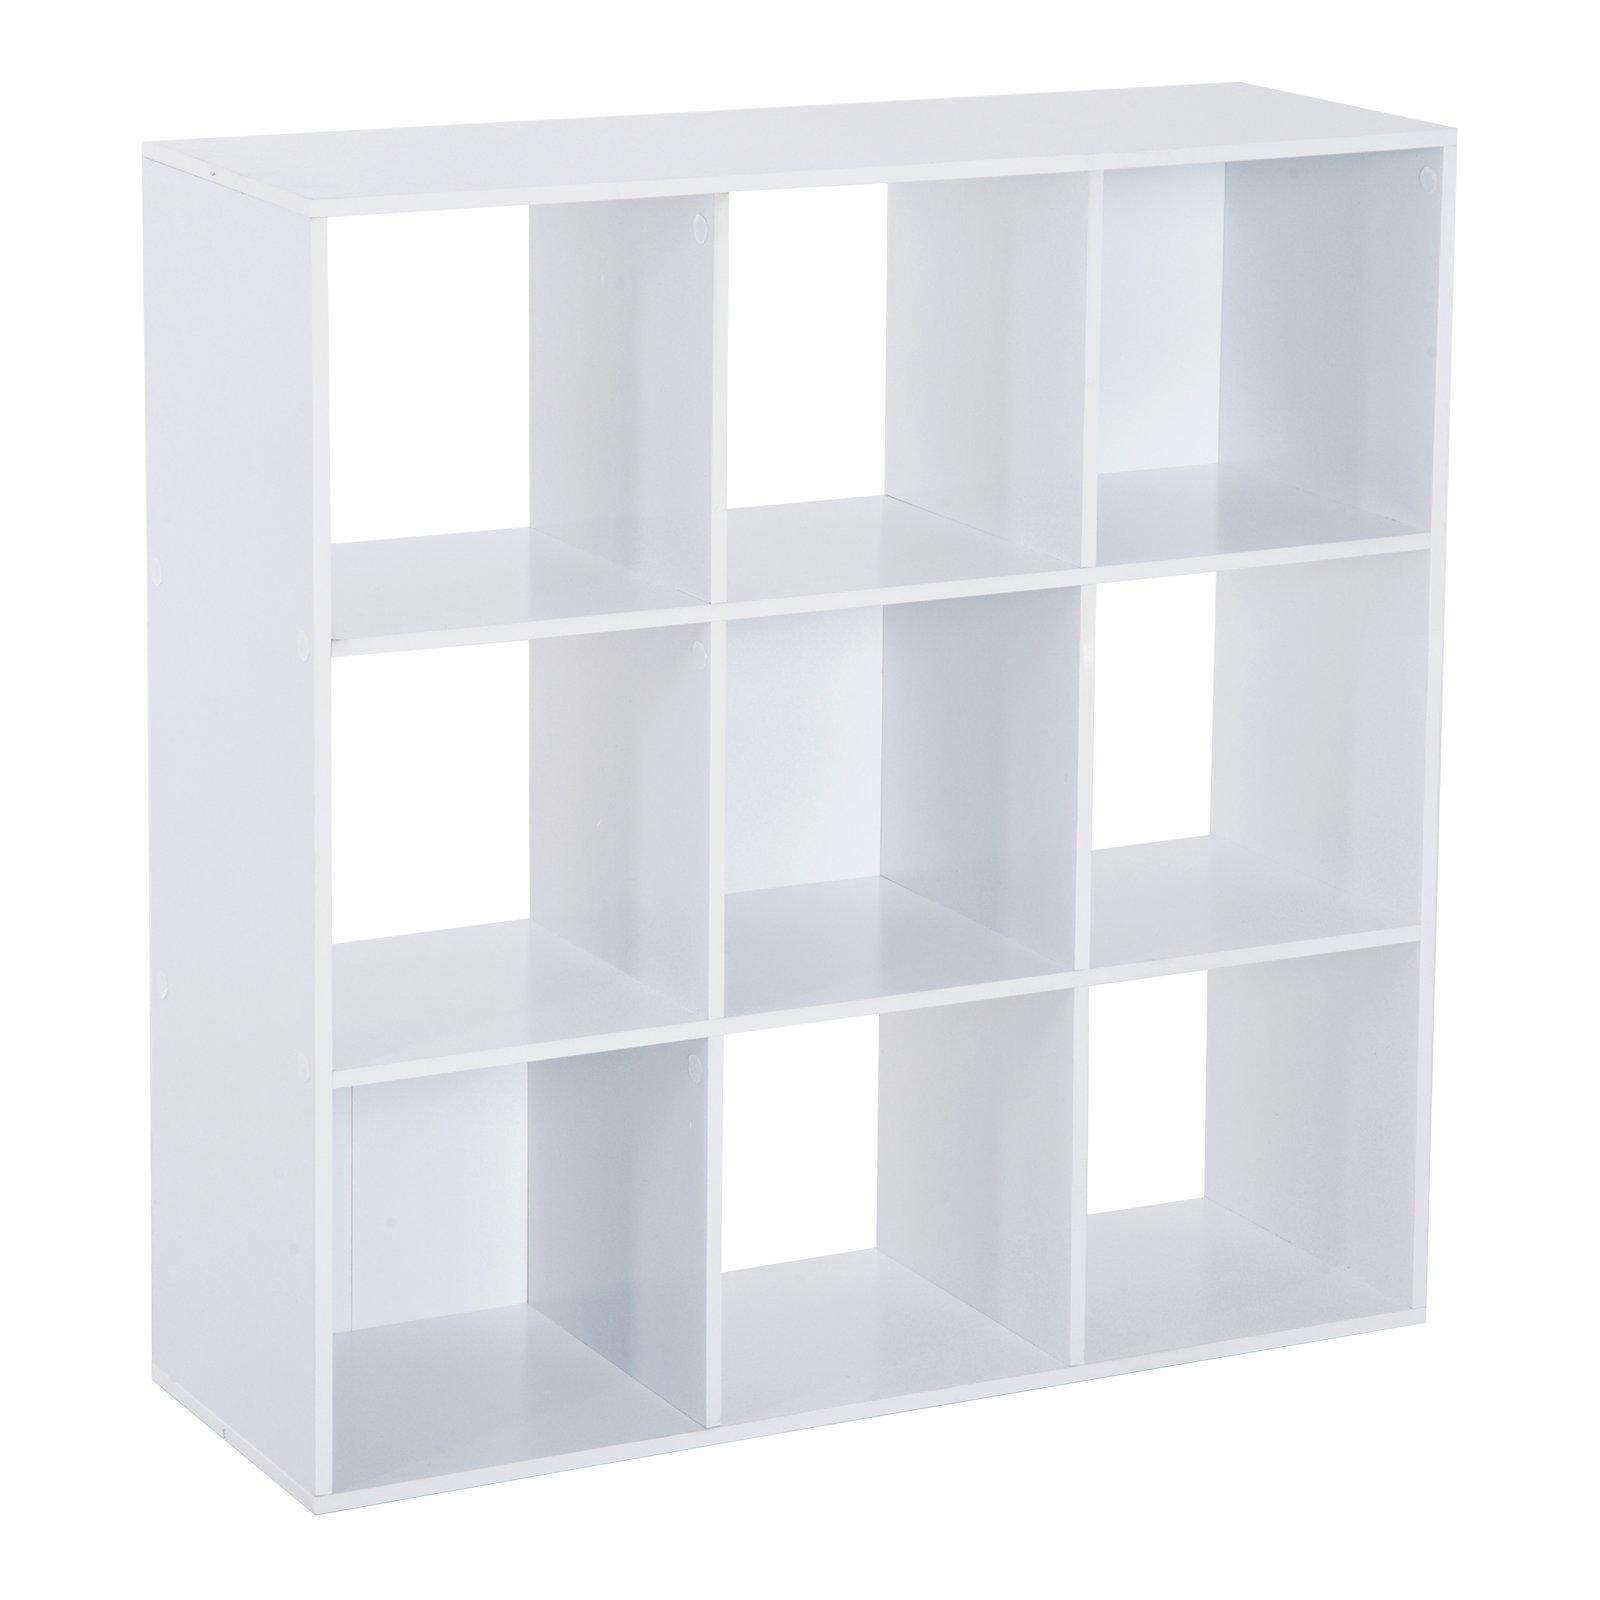 Wooden 9 Cube Storage Cabinet Unit 3 Tier Bookcase Shelves